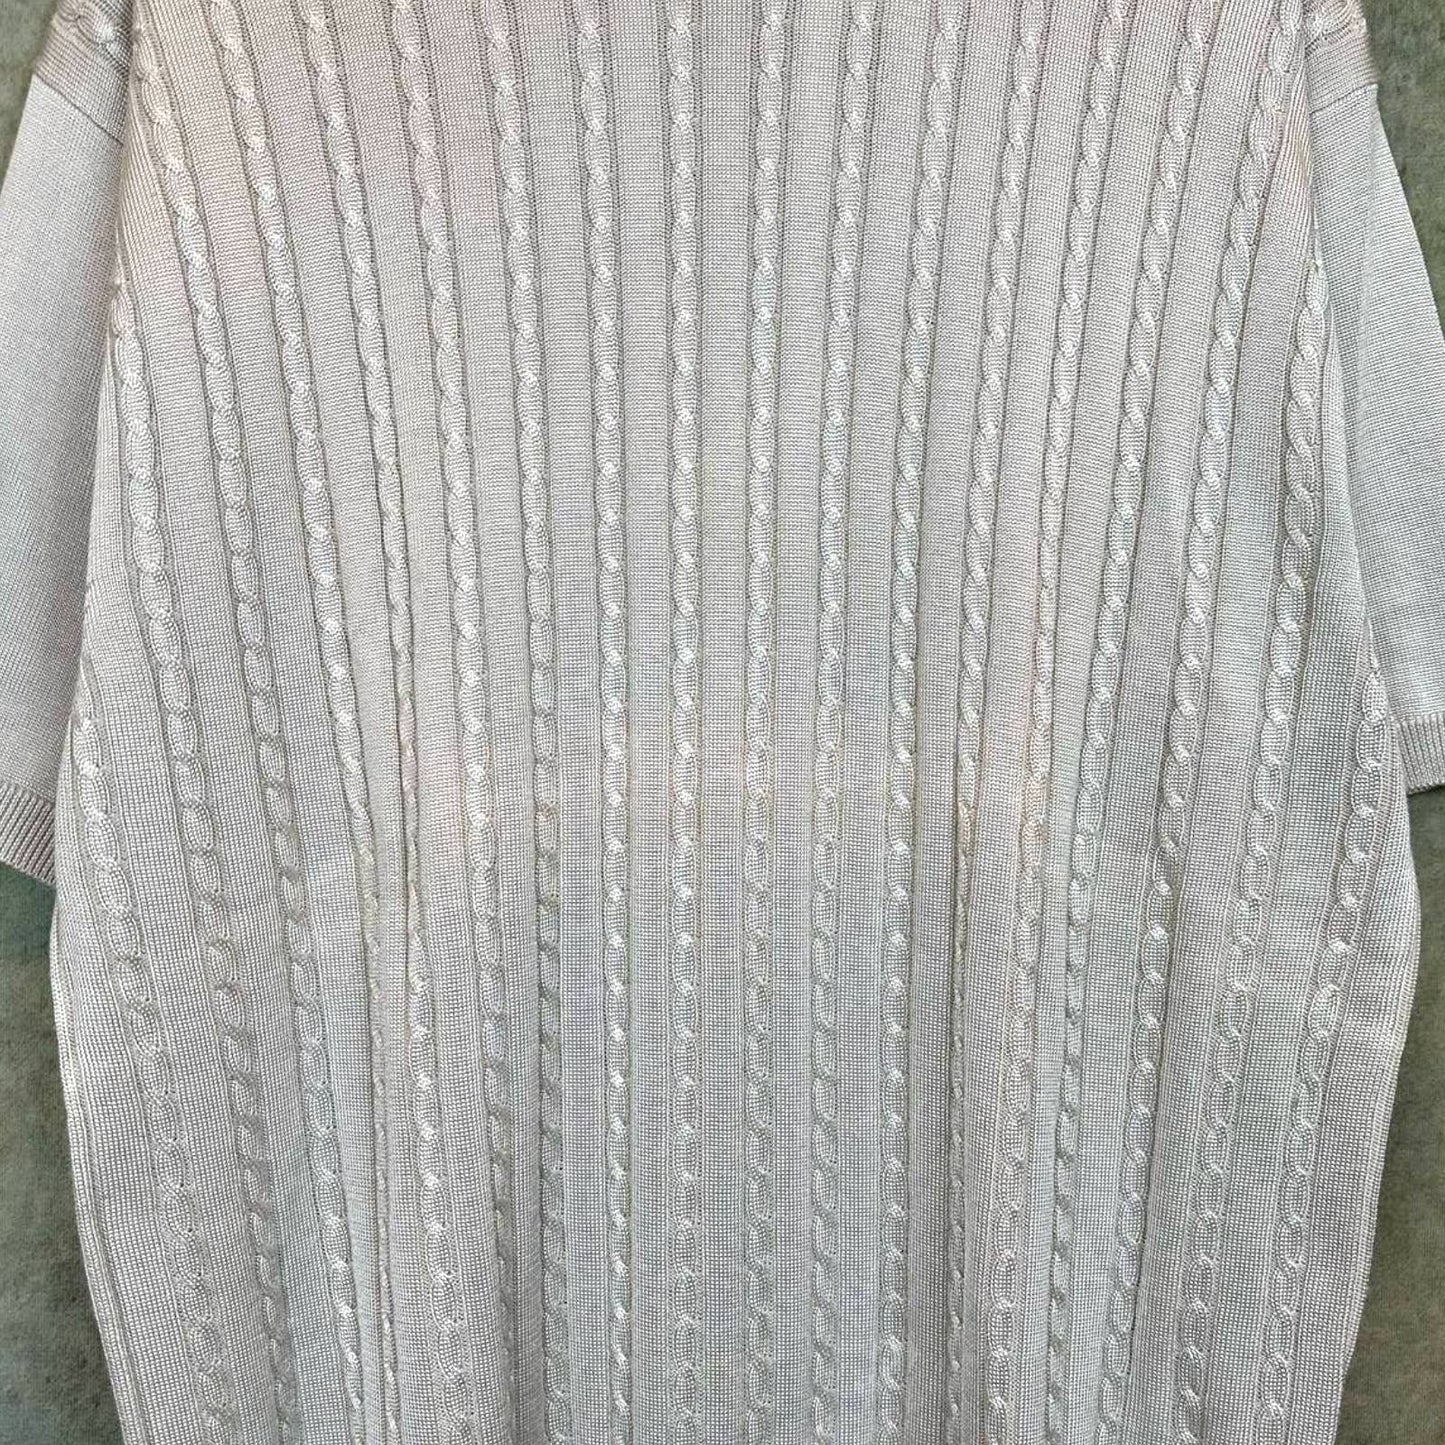 Vintage Cable Knit T Shirt XL